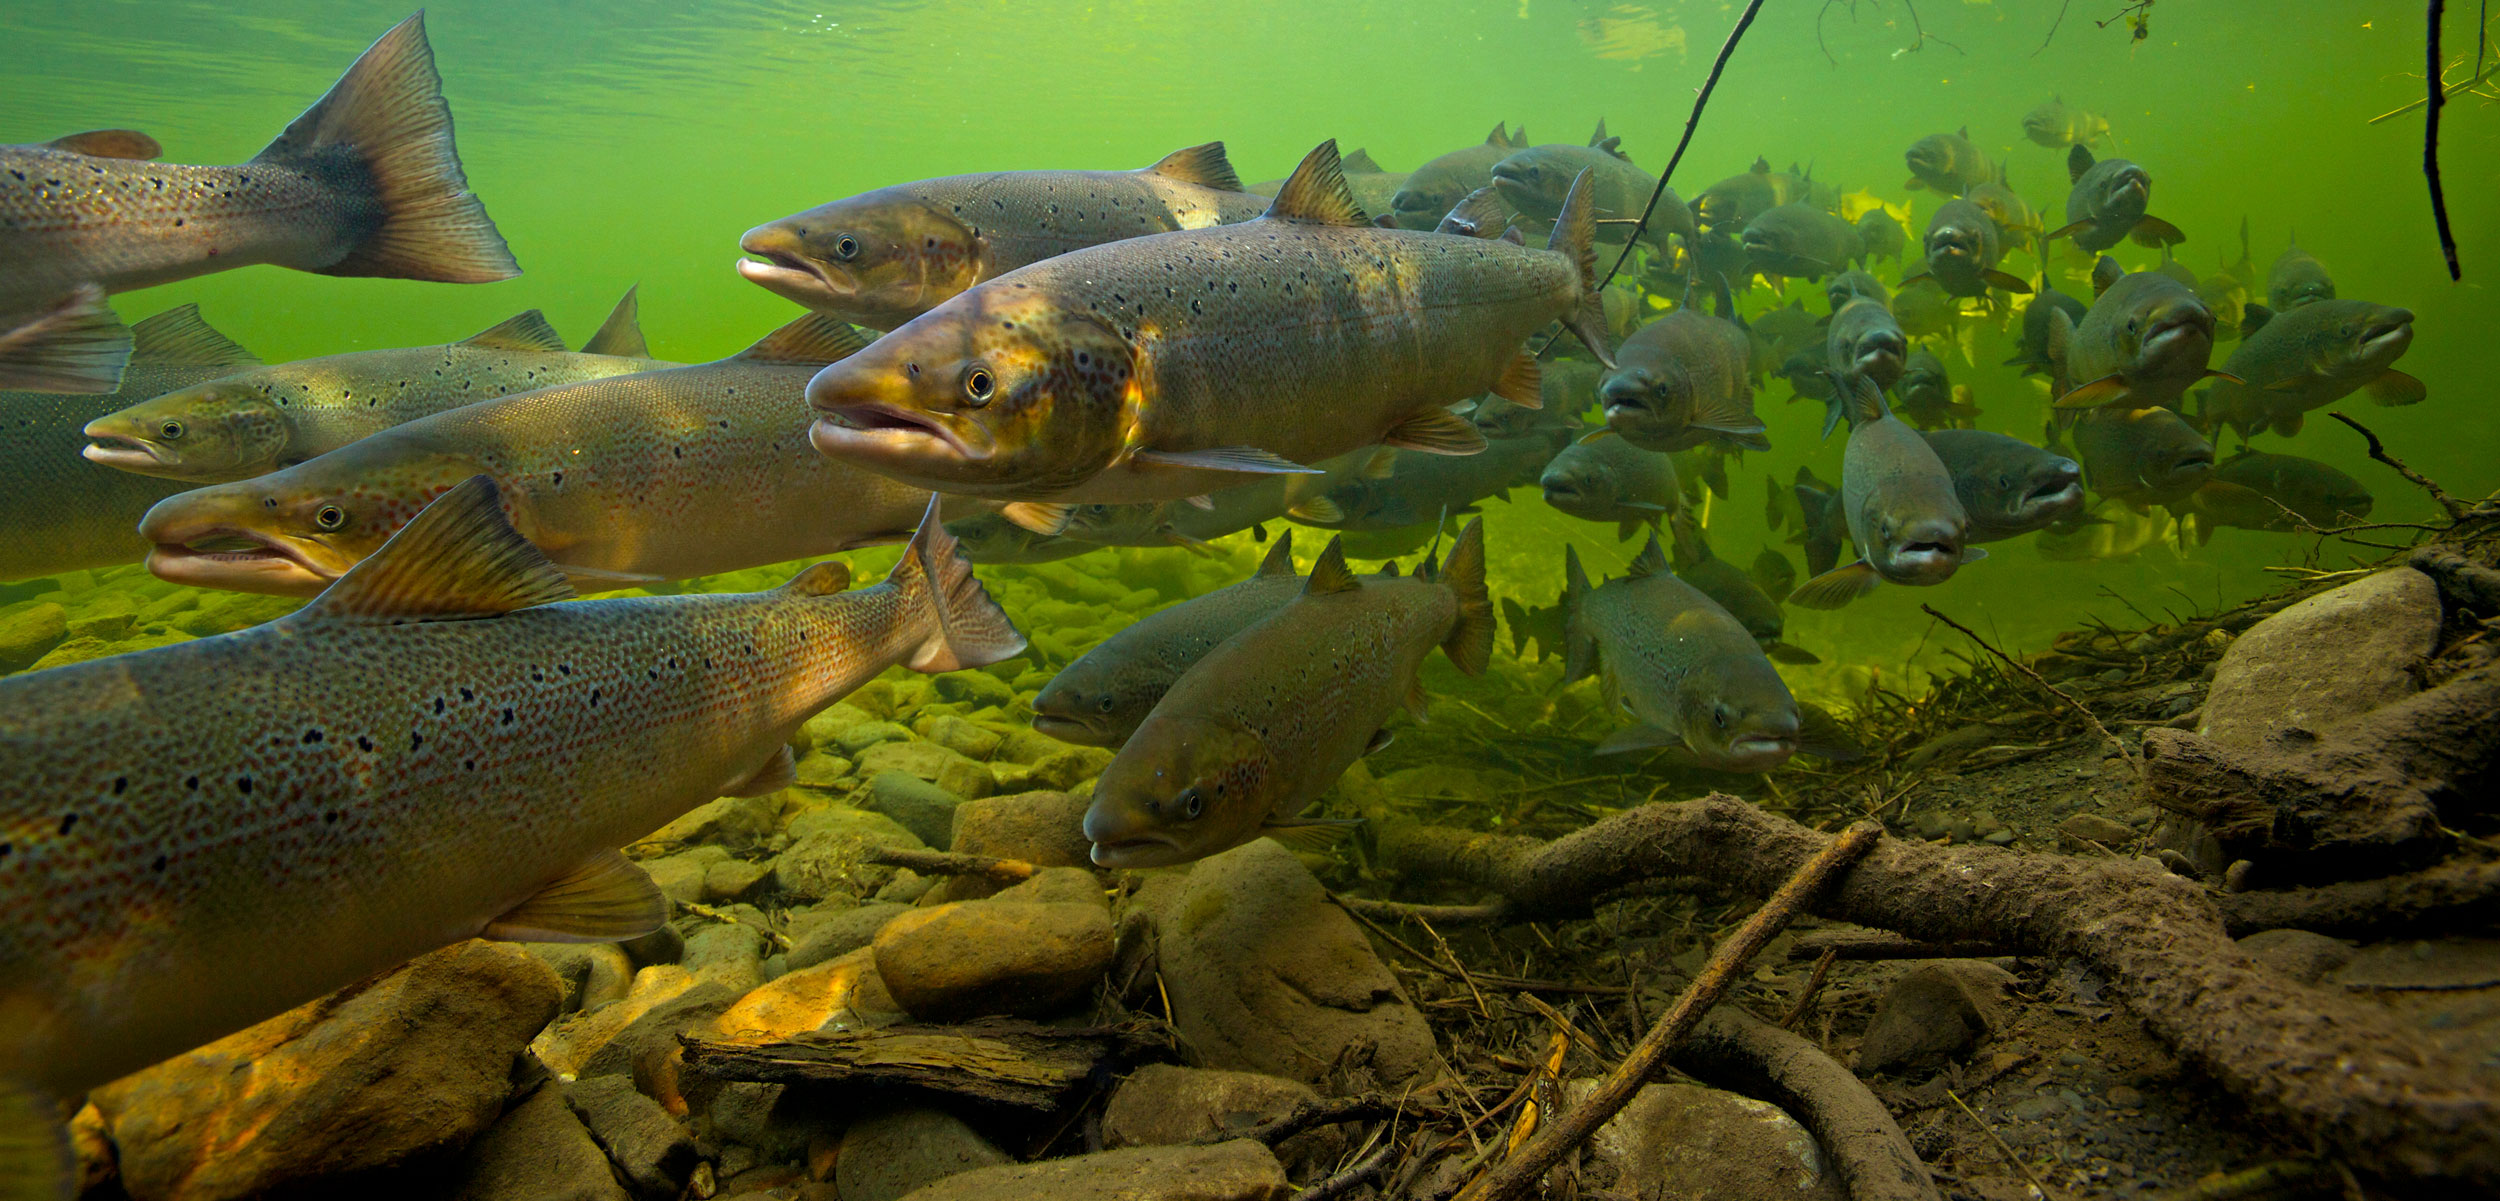 Atlantic salmon (Salmo salar) migrating upstream to spawn